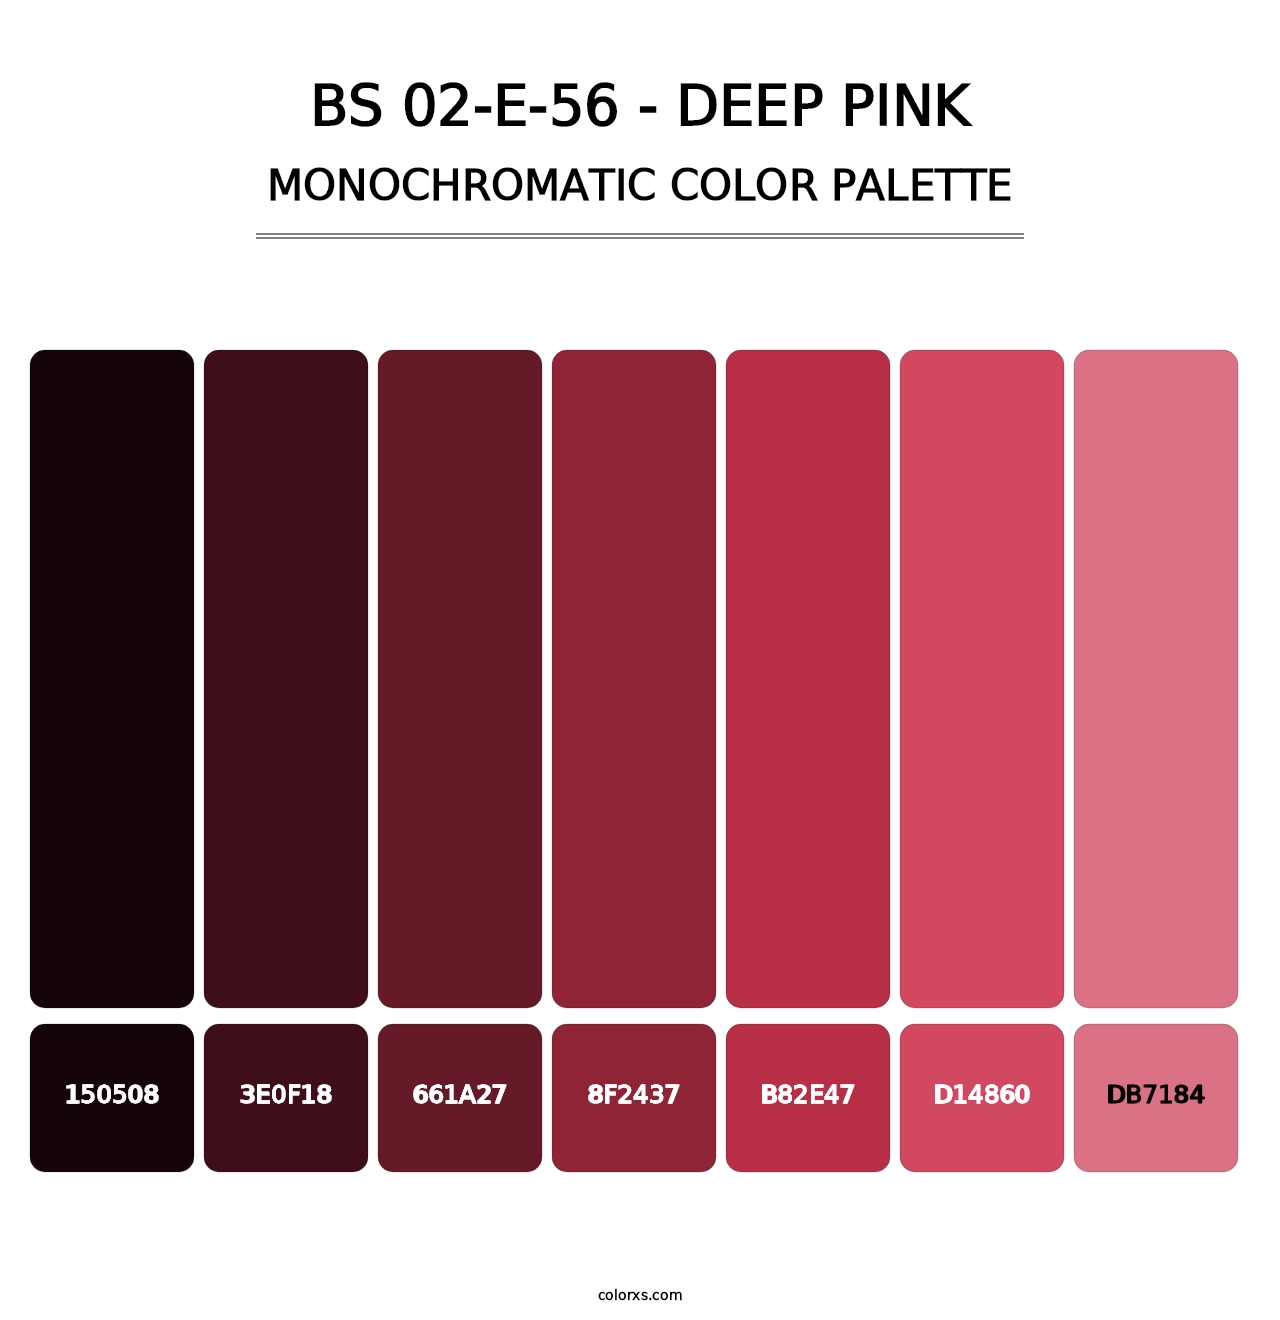 BS 02-E-56 - Deep Pink - Monochromatic Color Palette